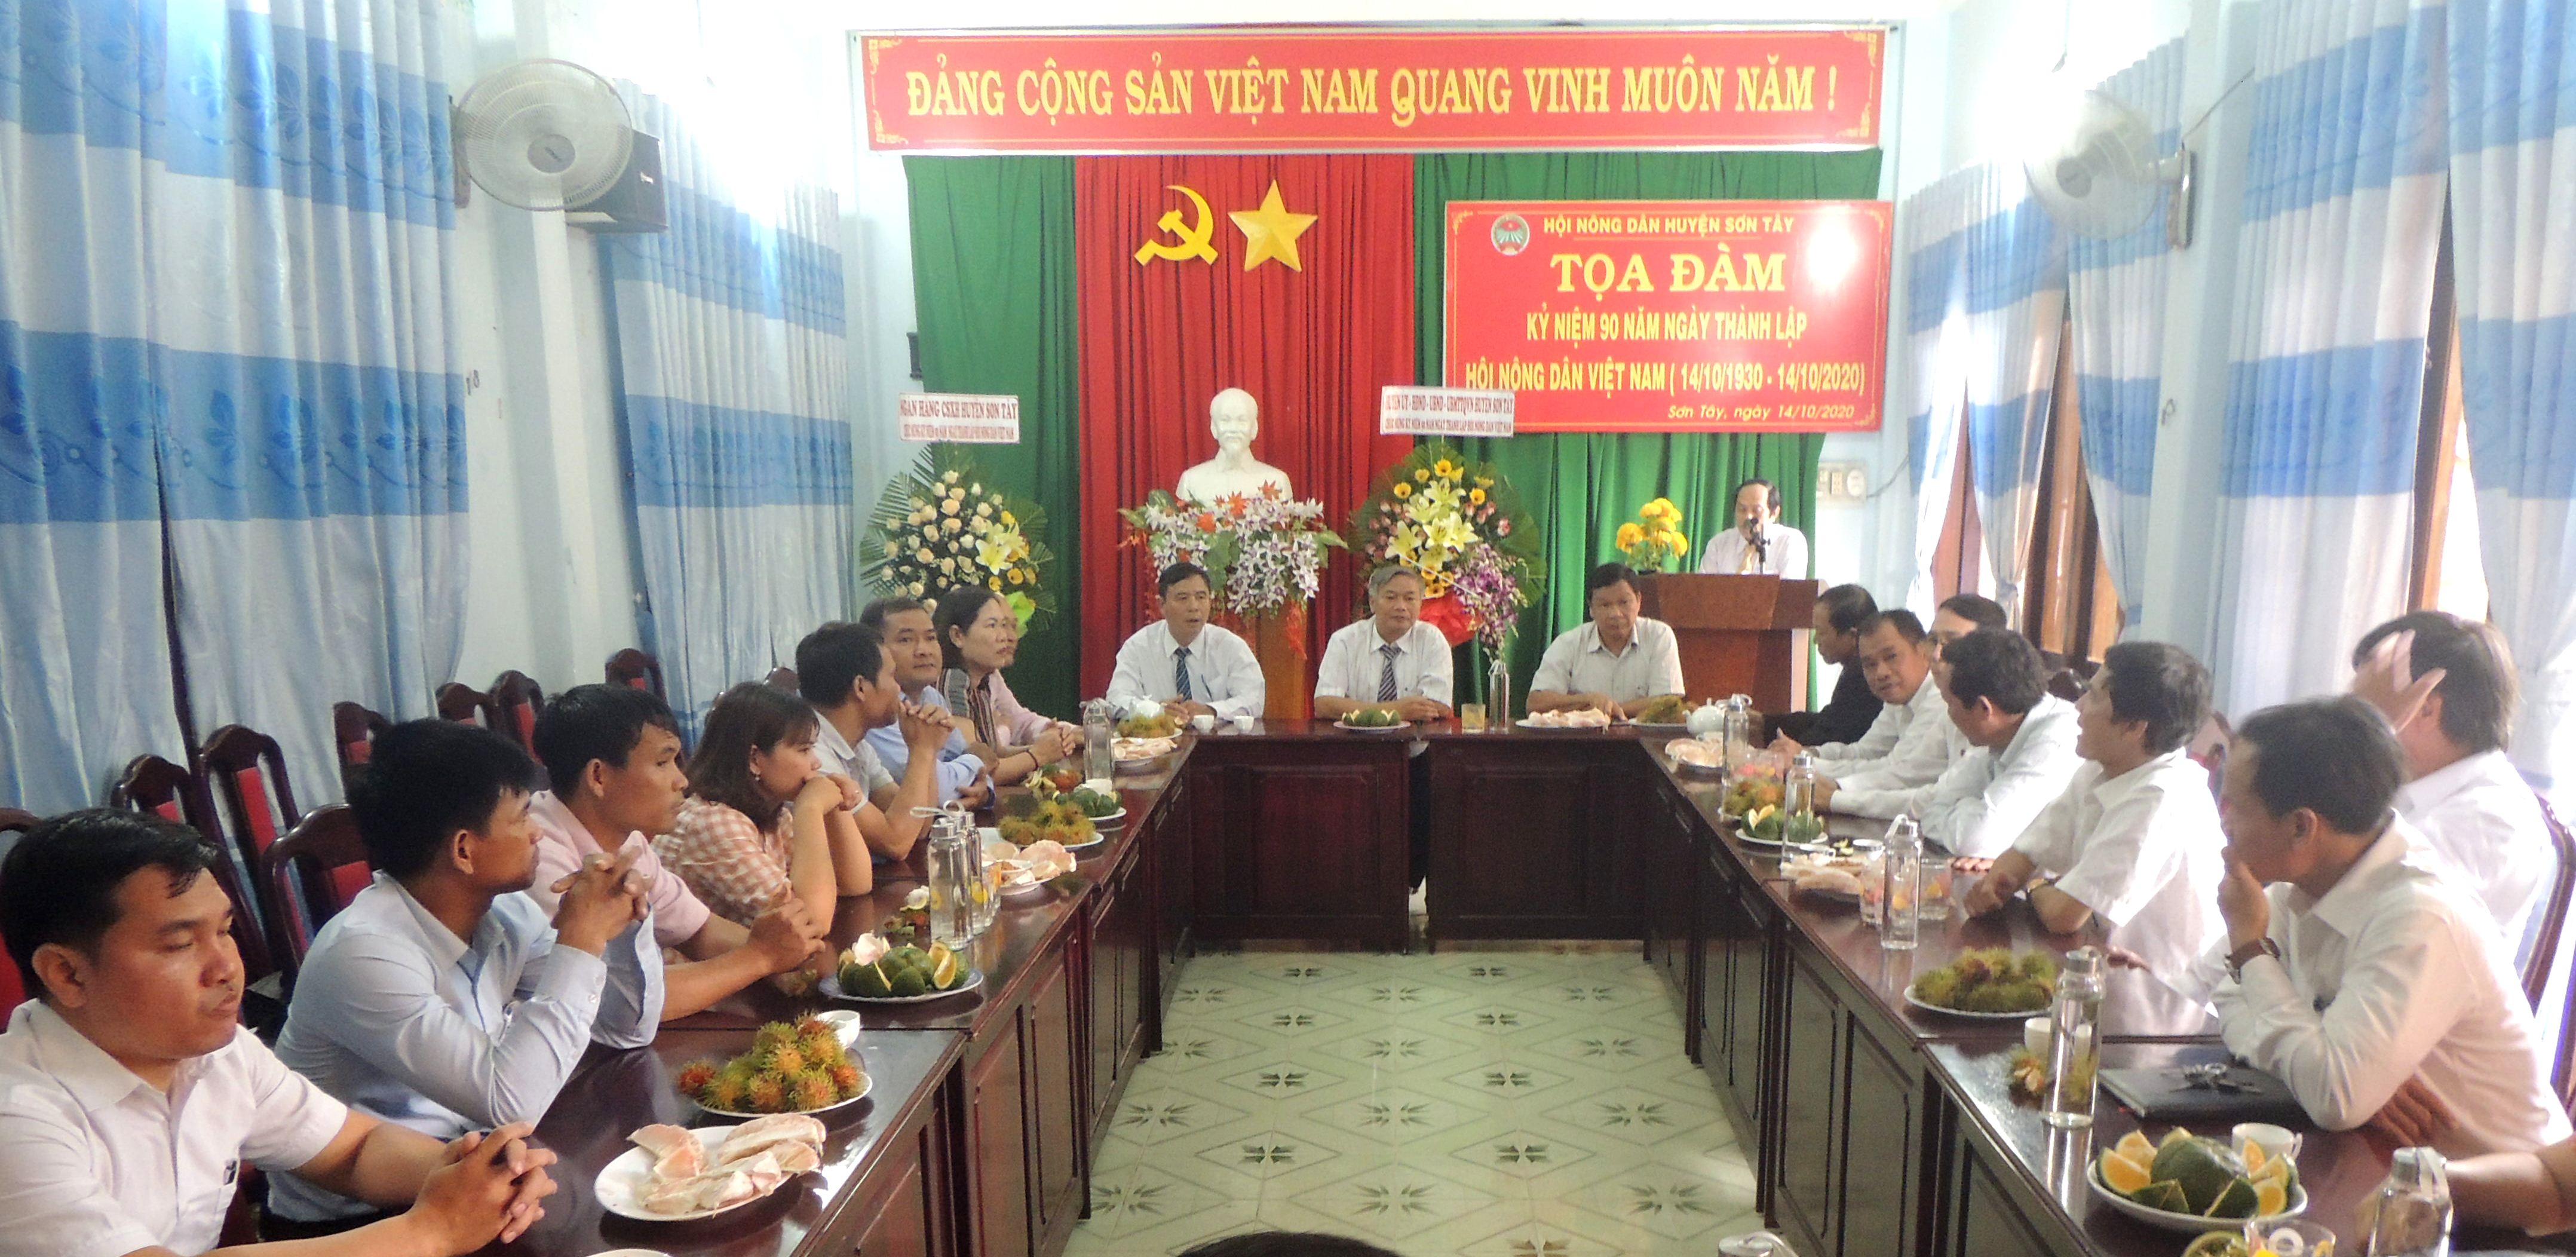 Sơn Tây: Kỷ niệm 90 năm Ngày thành lập Hội Nông dân Việt Nam